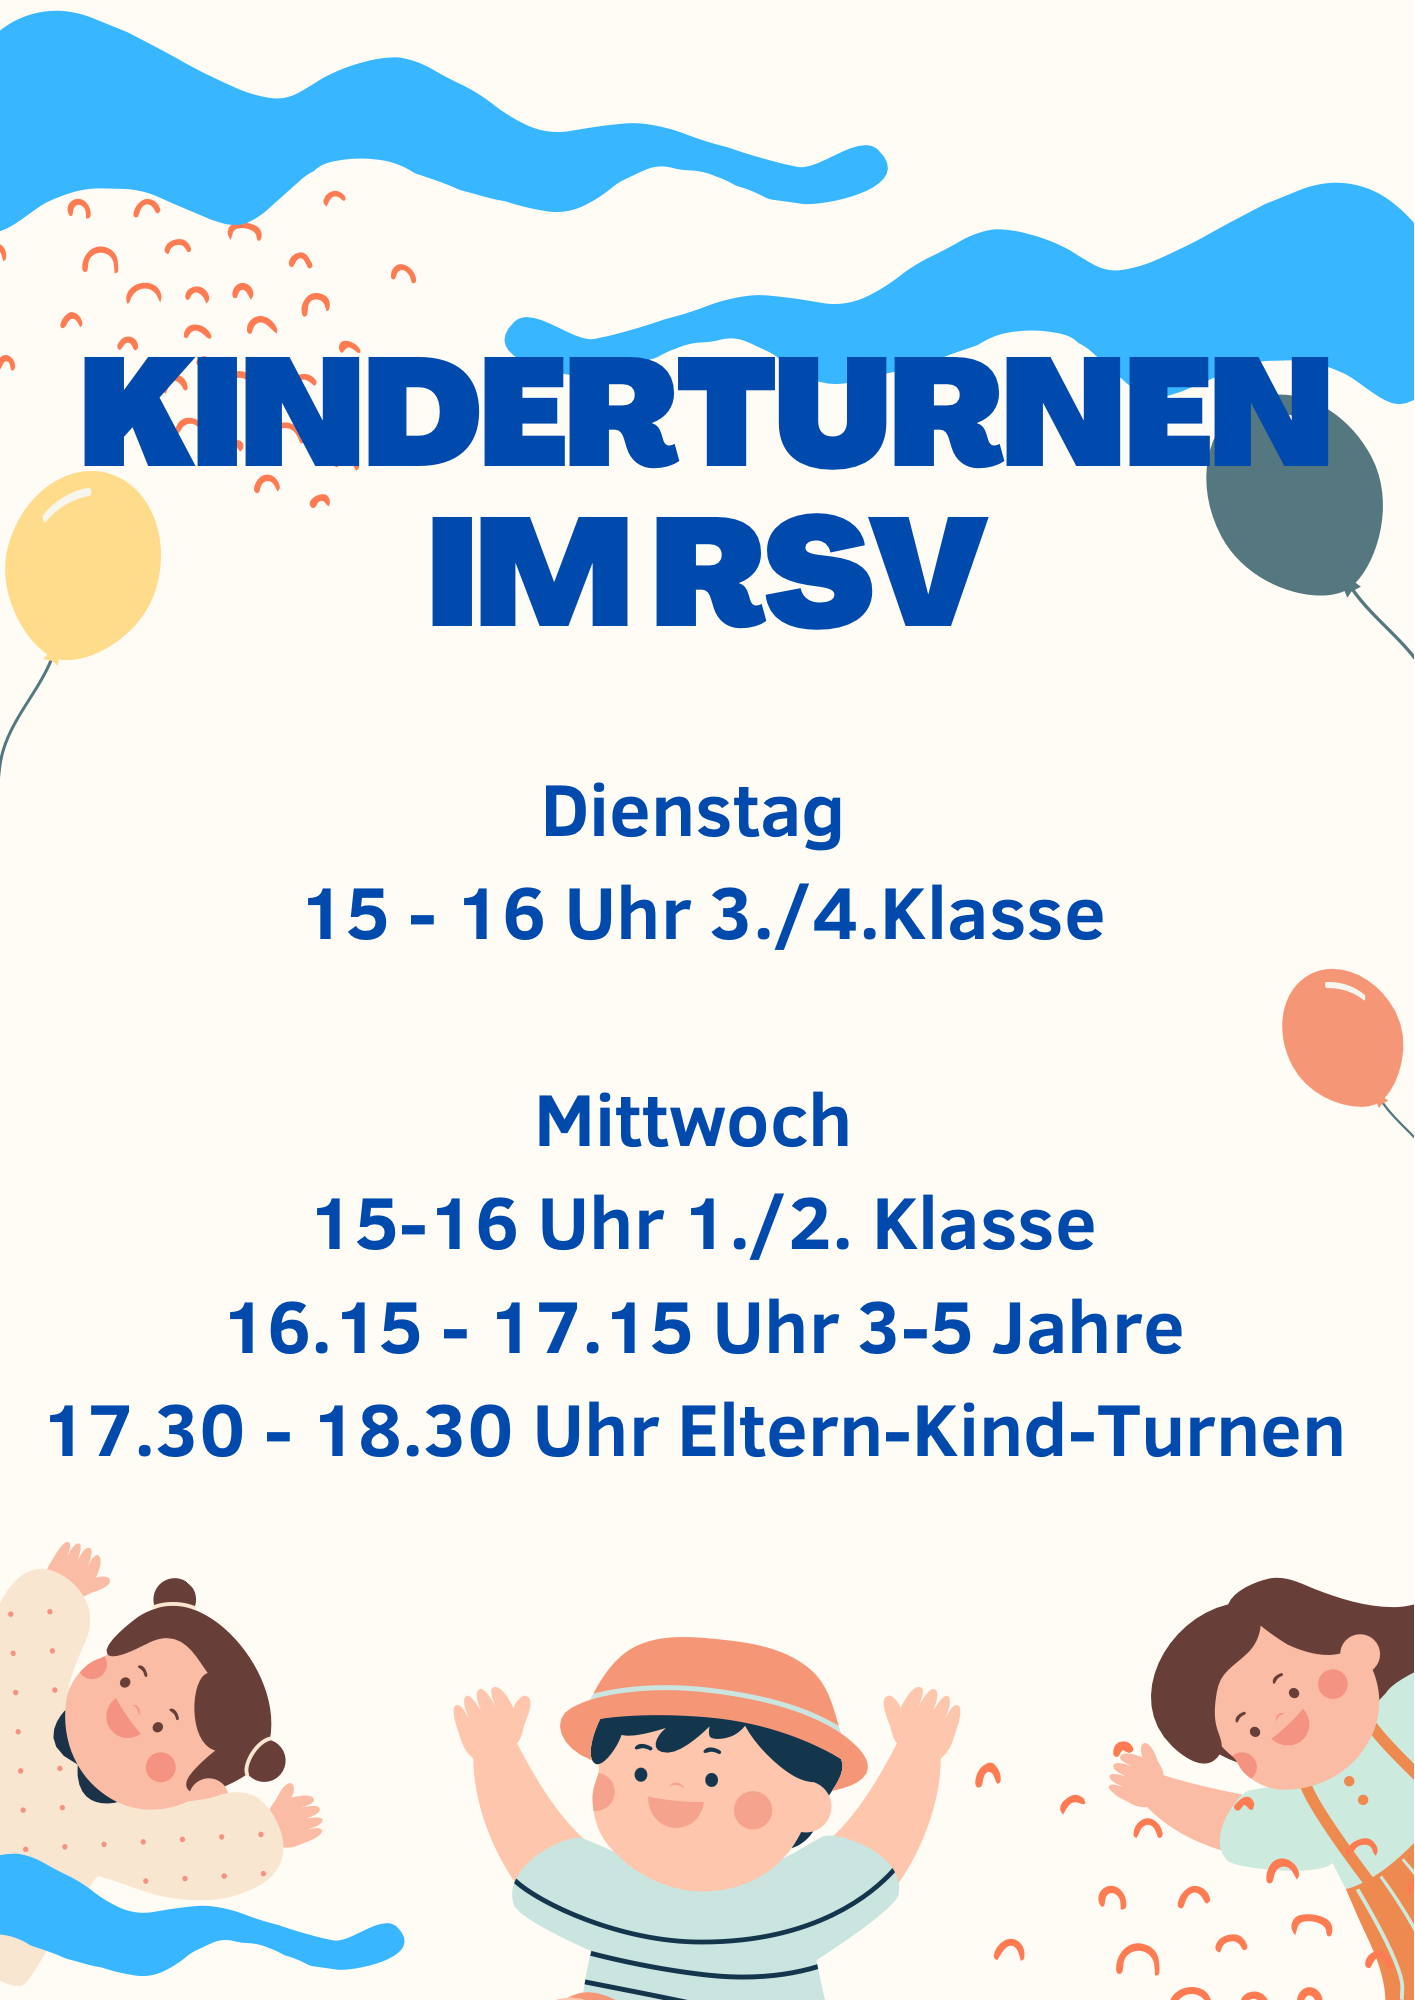 You are currently viewing Kinderturnen: Neuer Kurs für 3./4. Klasse dienstags